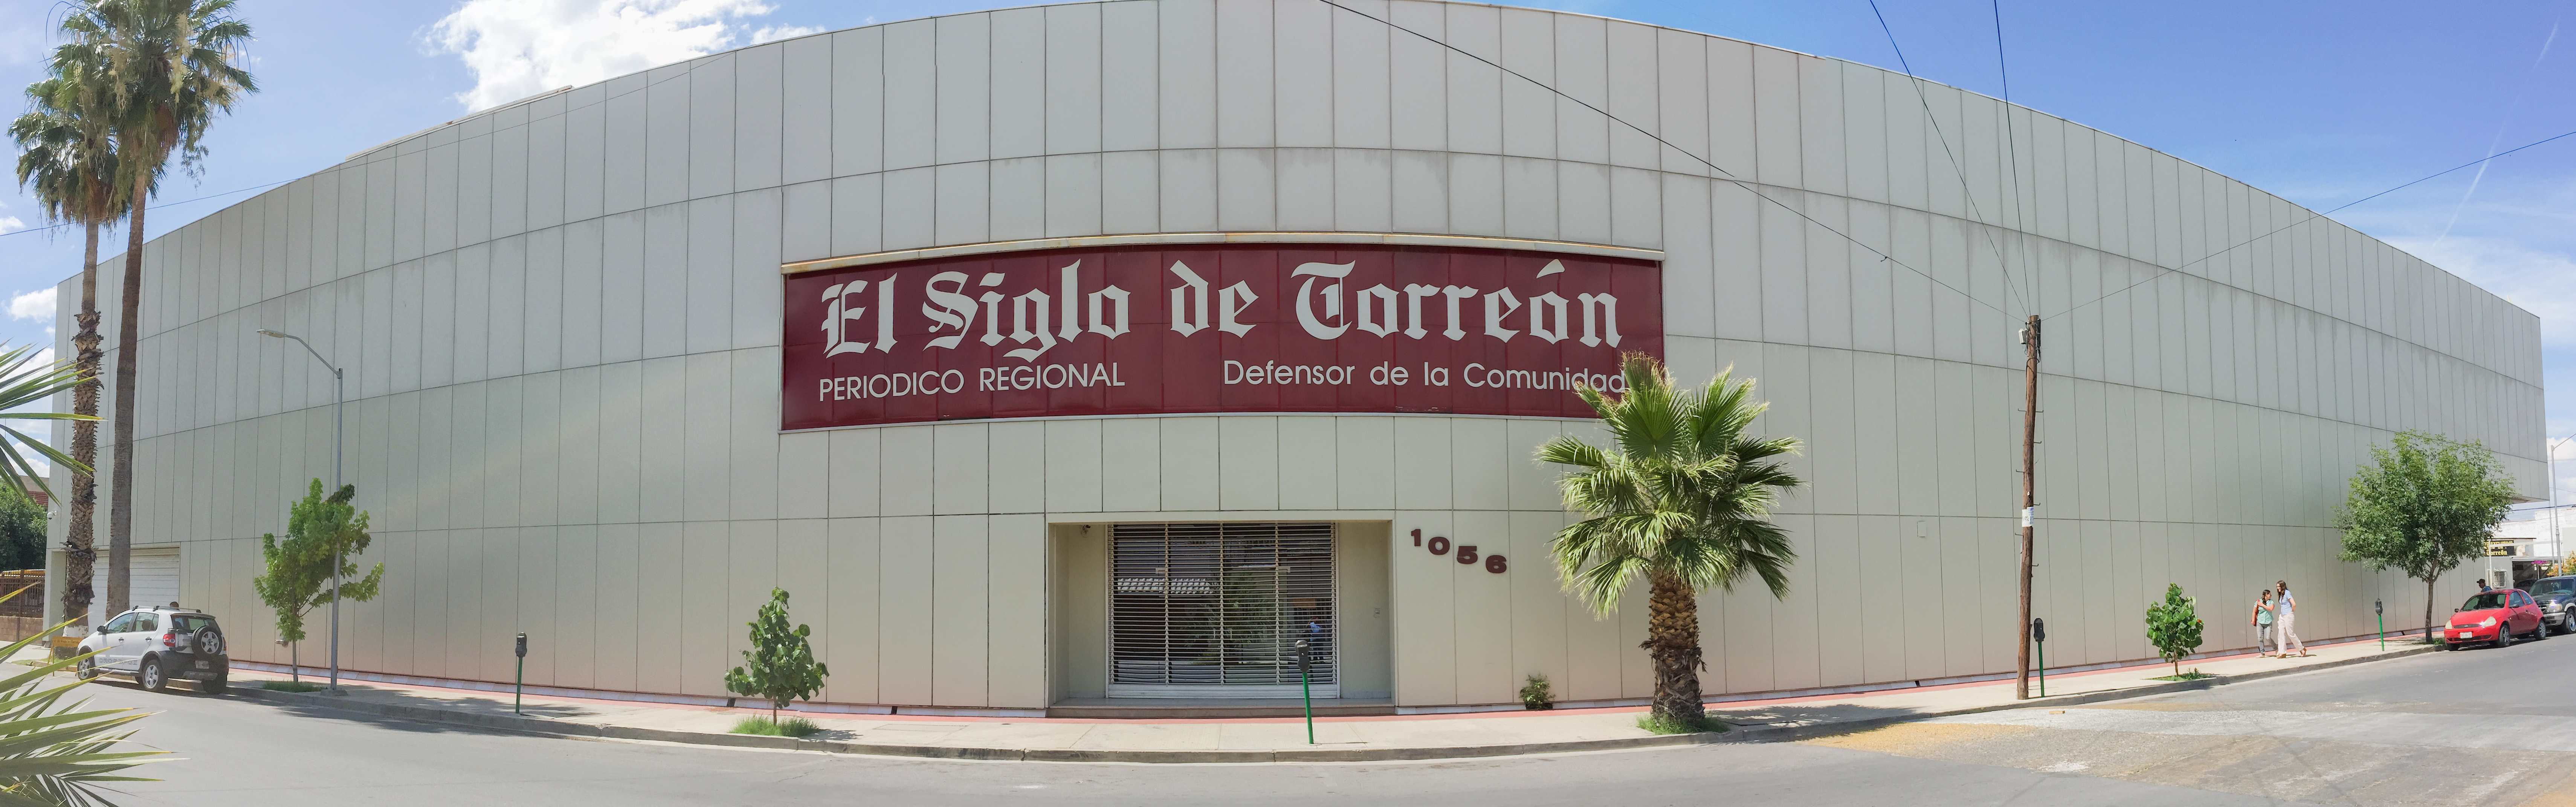 Edificio de El Siglo de Torreón